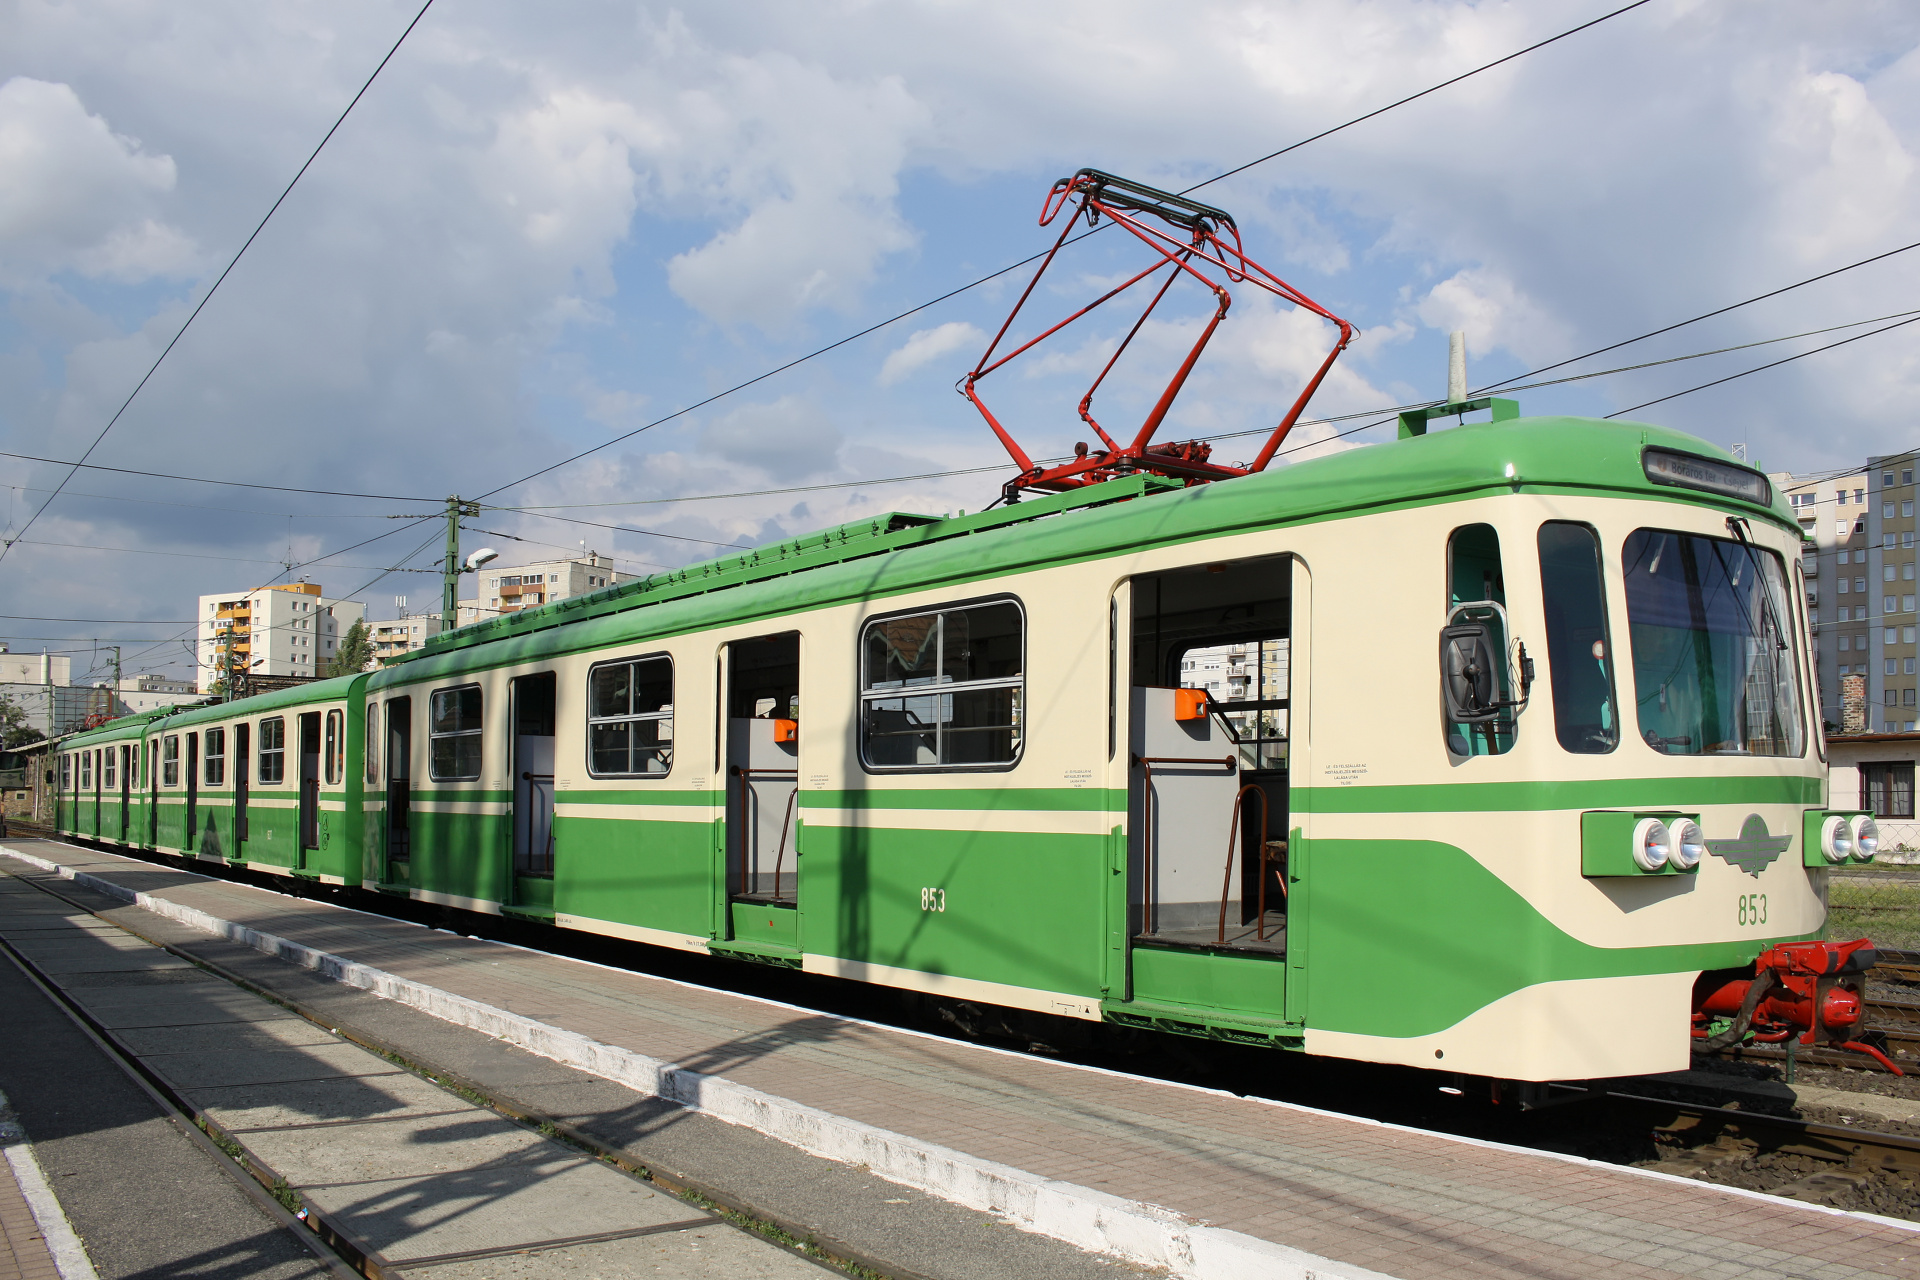 BHÉV MIX/A 853 (Podróże » Budapeszt » Pojazdy » Pociągi i lokomotywy)